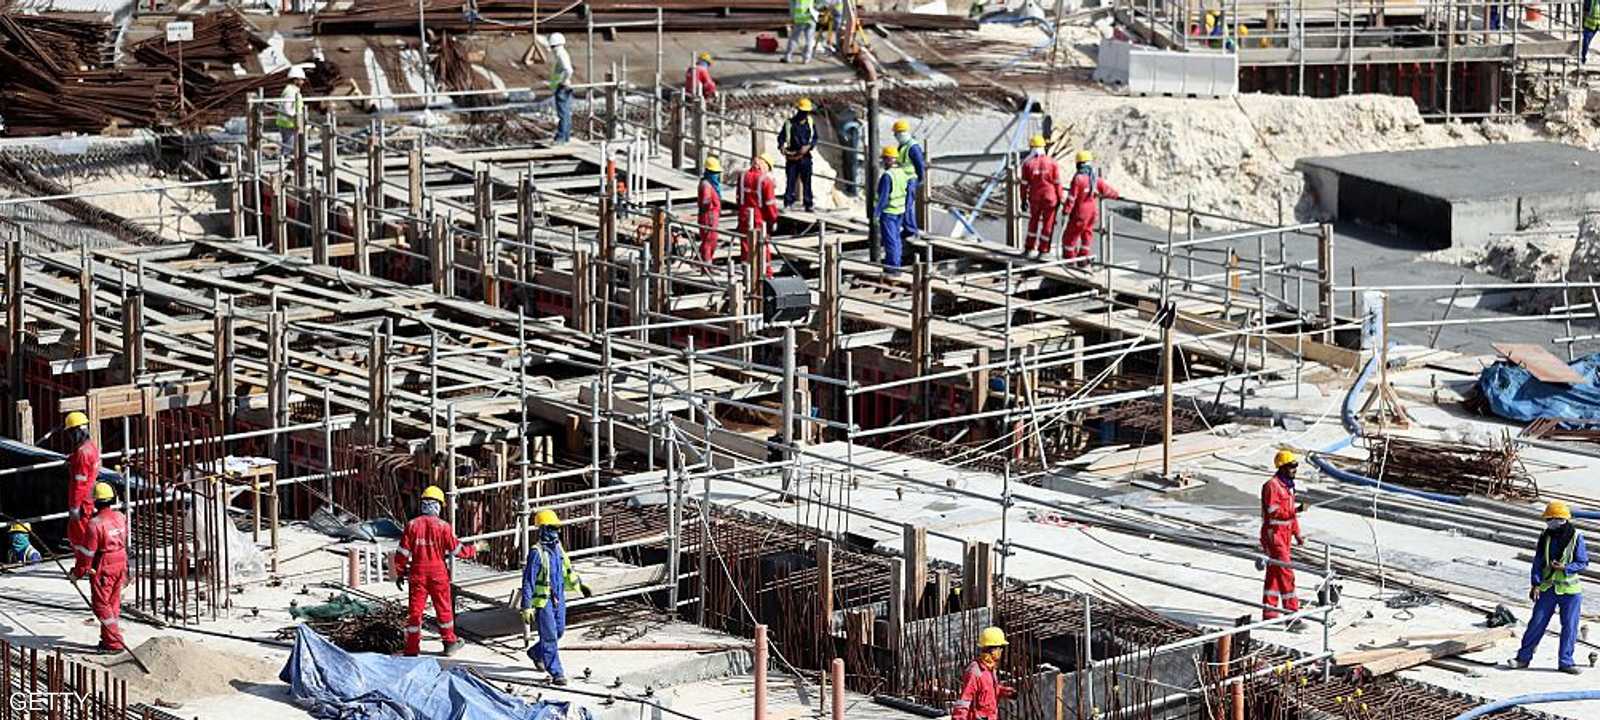 يعاني العمال في قطر من ظروف معيشية صعبة